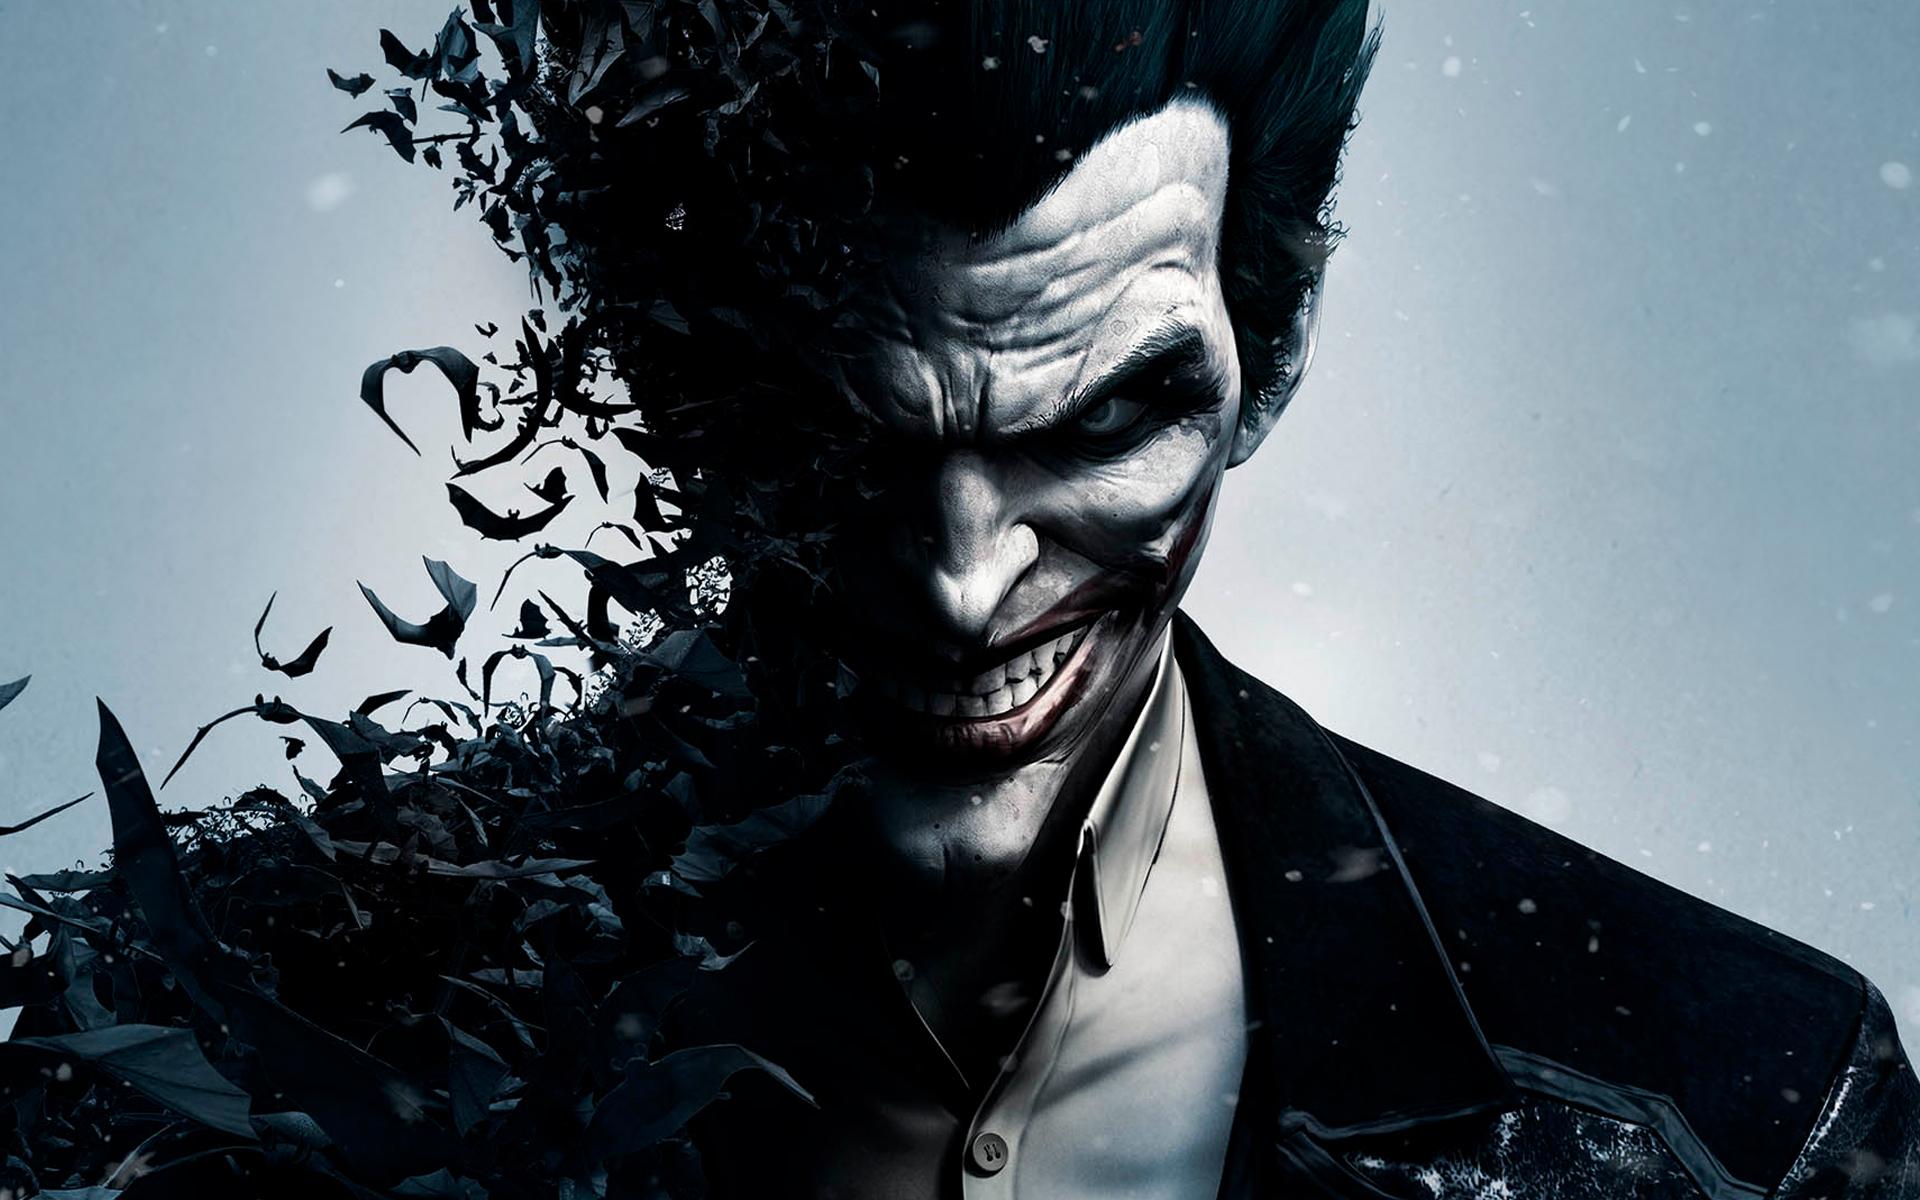 4K wallpaper: Scary Joker Wallpaper Free Download